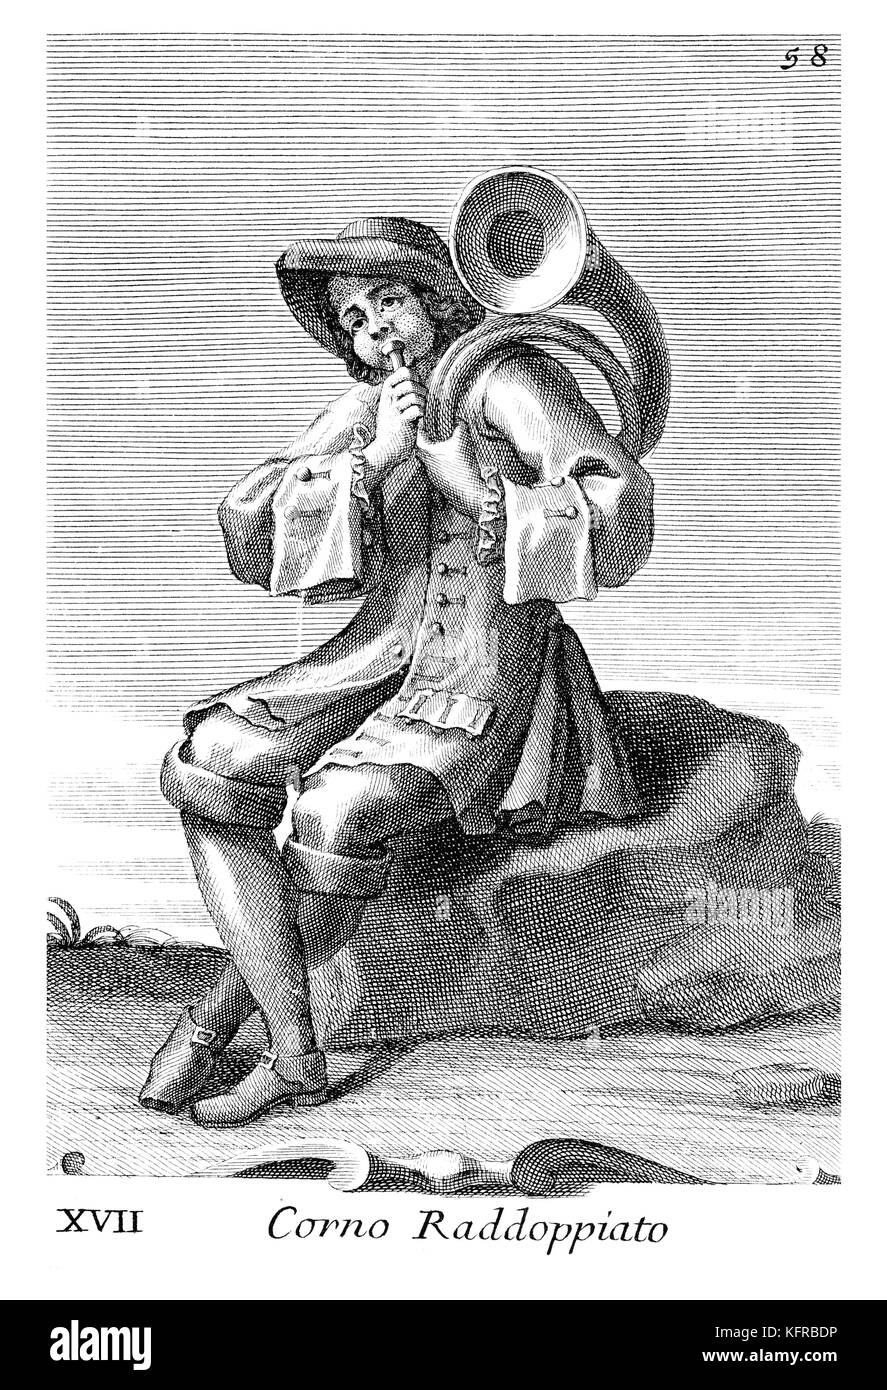 Homme jouant de la flûte. Illustration de Filippo Bonanni's "Gabinetto Armonico" publié en 1723, l'Illustration 17. Gravure par Arnold van Westerhout. Sous-titre suivant Corno Raddoppiato. Banque D'Images